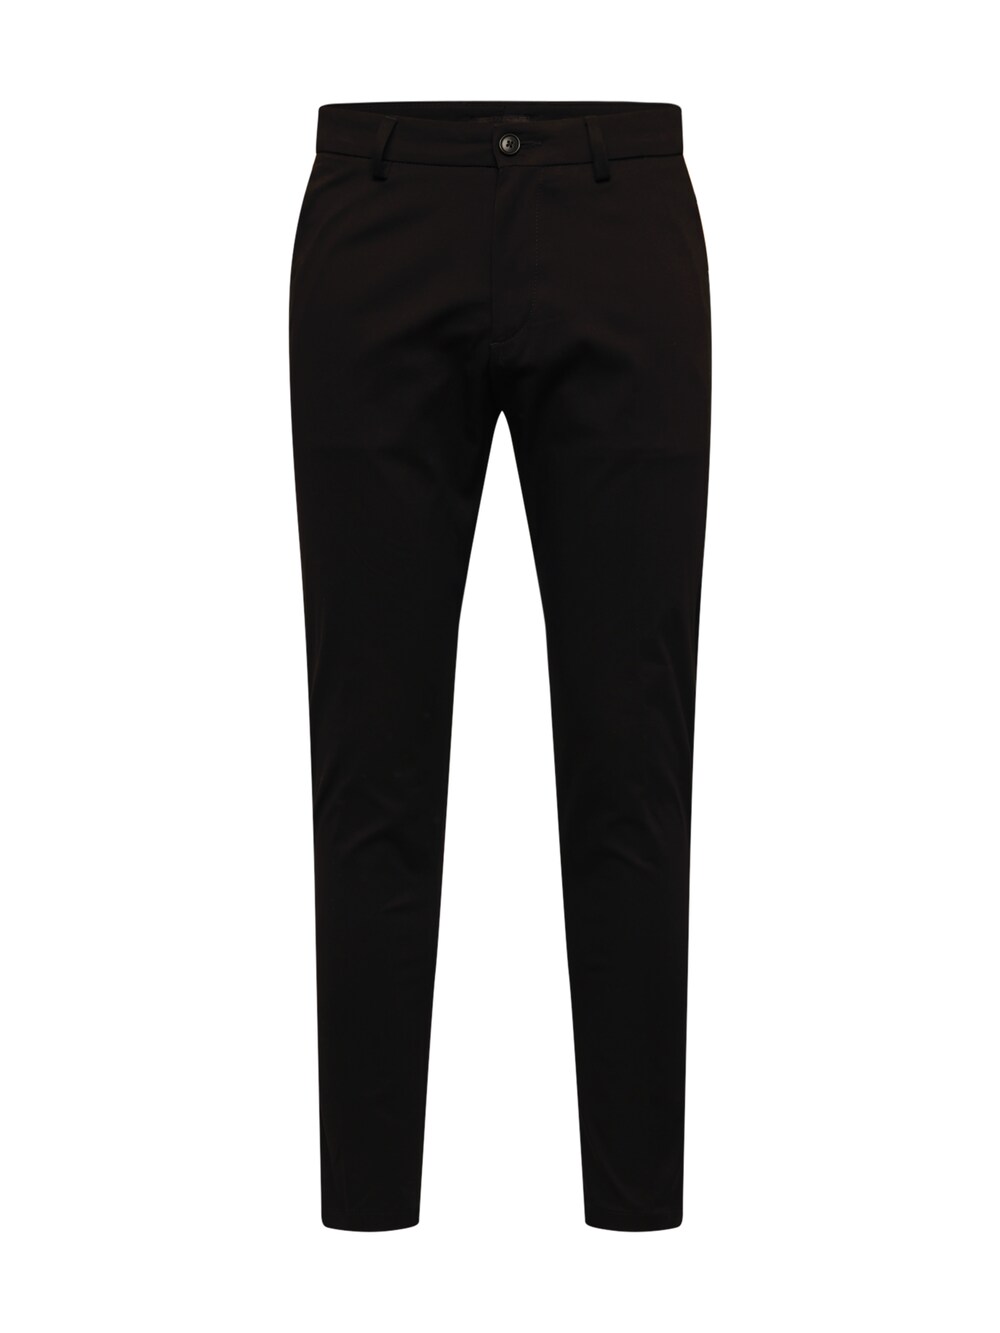 Зауженные брюки-чиносы Drykorn AJEND, черный костюмные брюки ajend drykorn серо коричневый